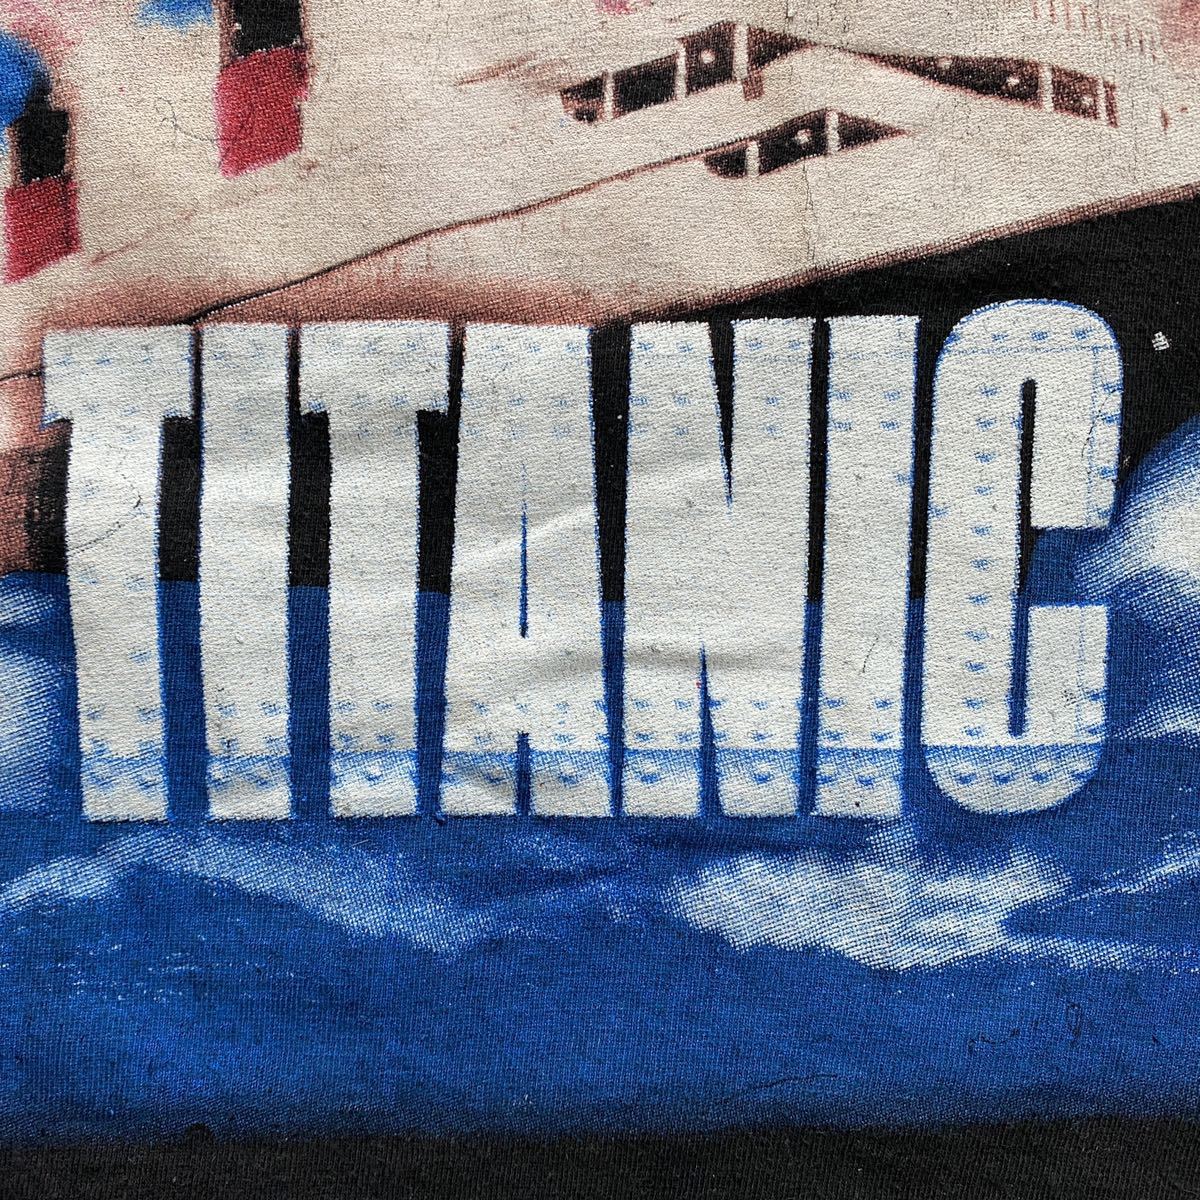 激レアVintage Leonardo DiCaprio Titanic Tee XL Black タイタニック